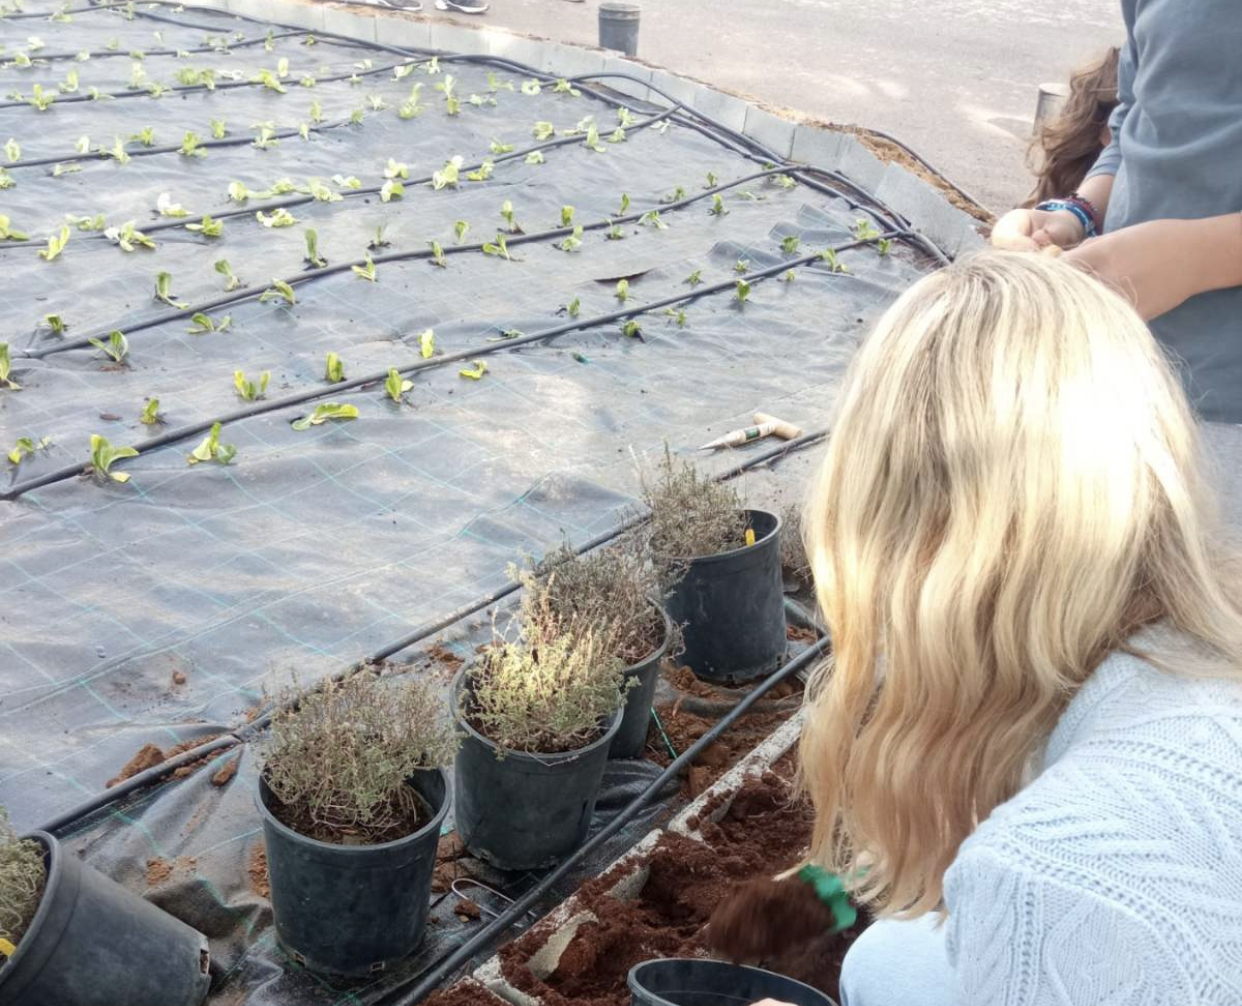 Μαθητές καλλιεργούν έναν από τους μεγαλύτερους σχολικούς αρωματολαχανόκηπους στη χώρα [photos]